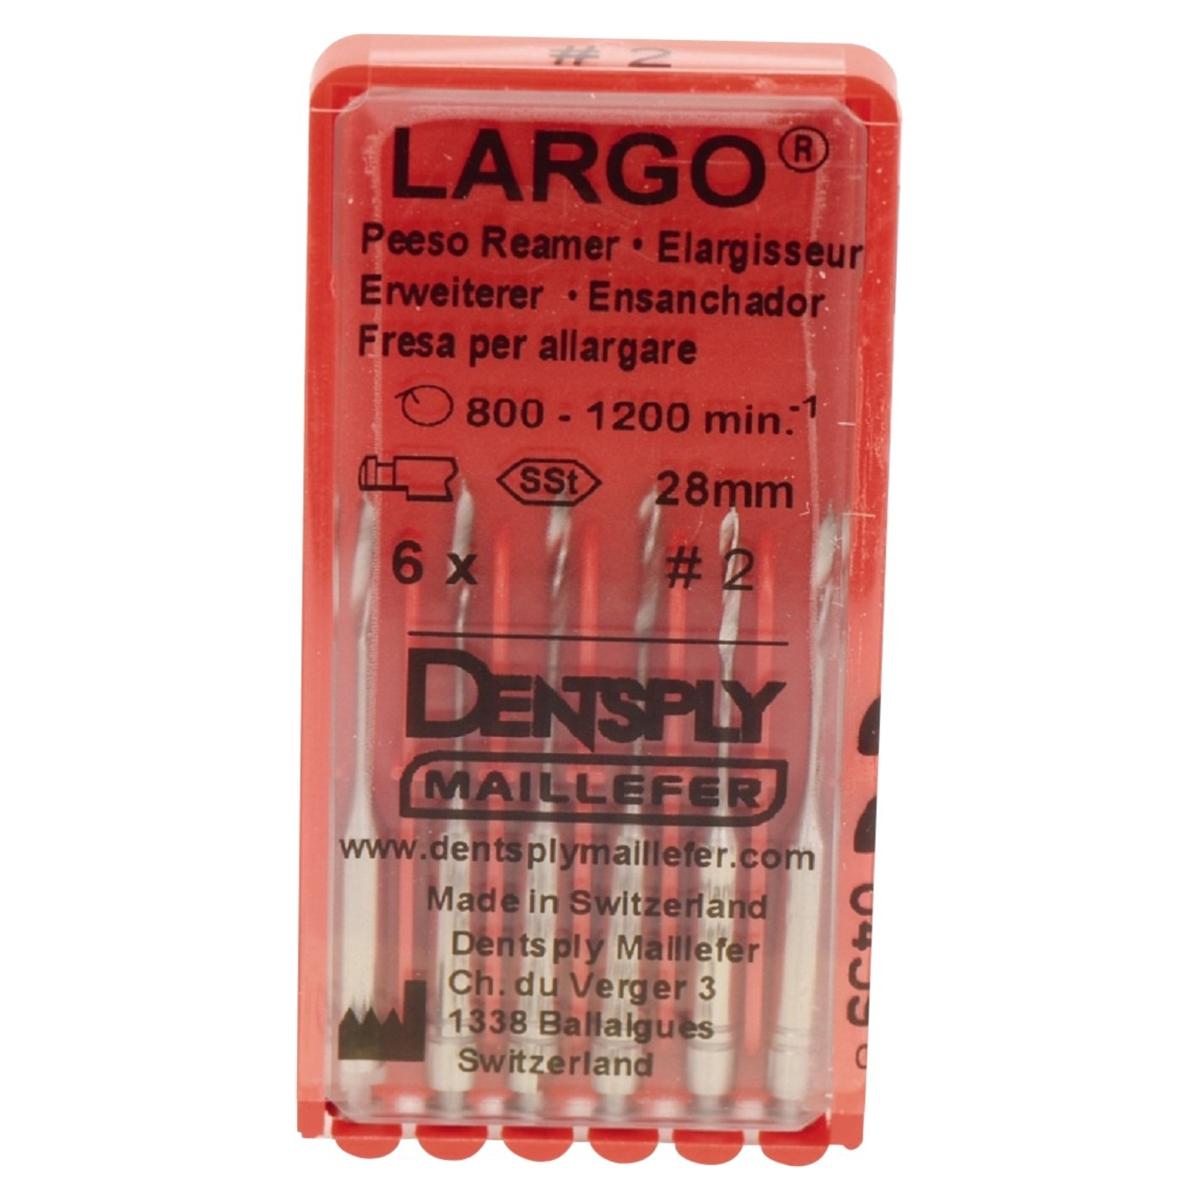 Largo Peeso Reamer - Size 1 - 6, 32 mm, 6 stuks